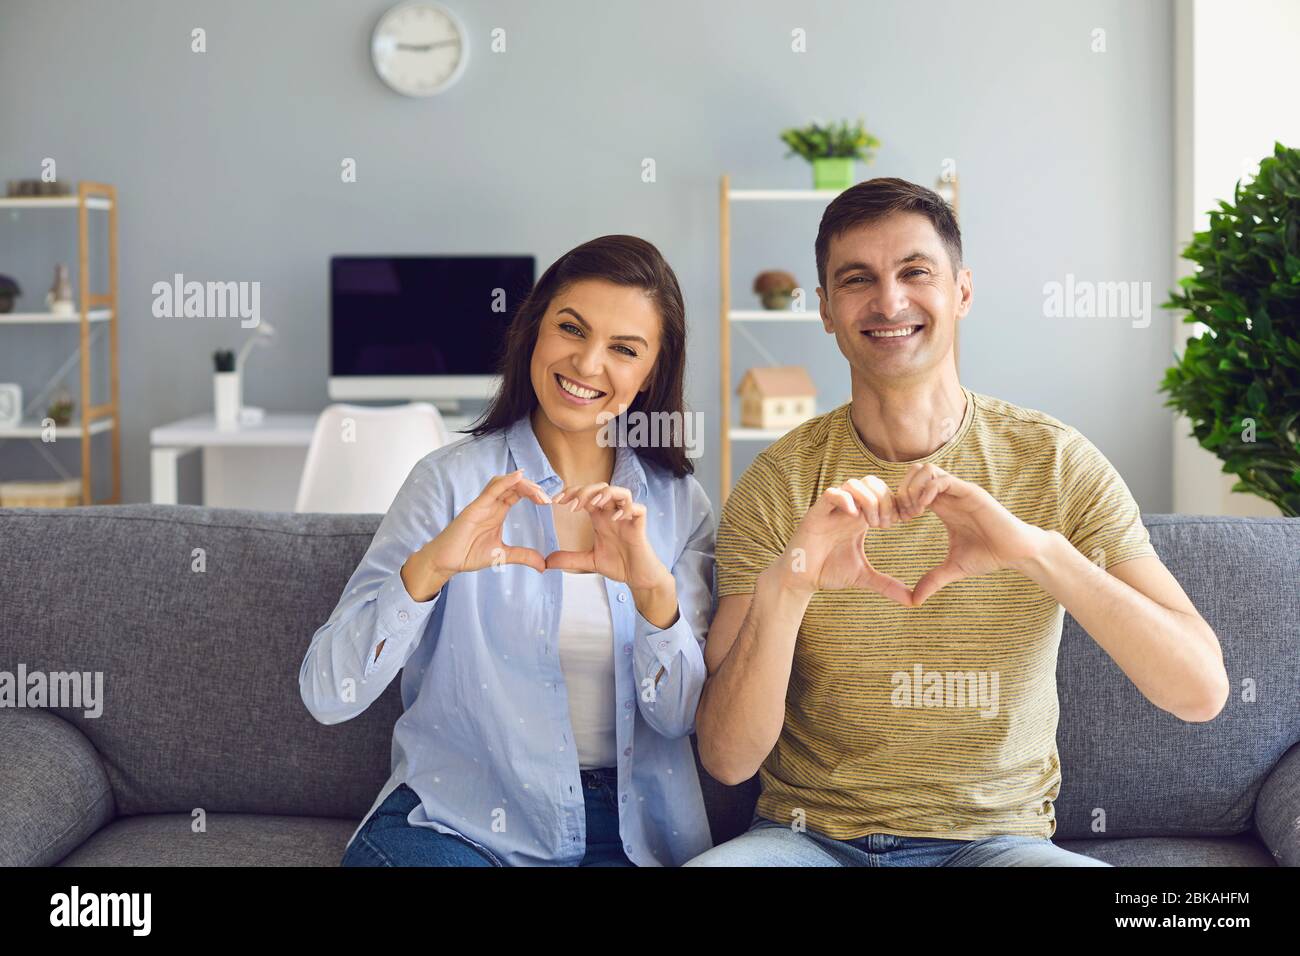 Glücklich lächelndes Paar hält die Hände in Form eines Herzens begrüßt sitzen im Haus Stockfoto